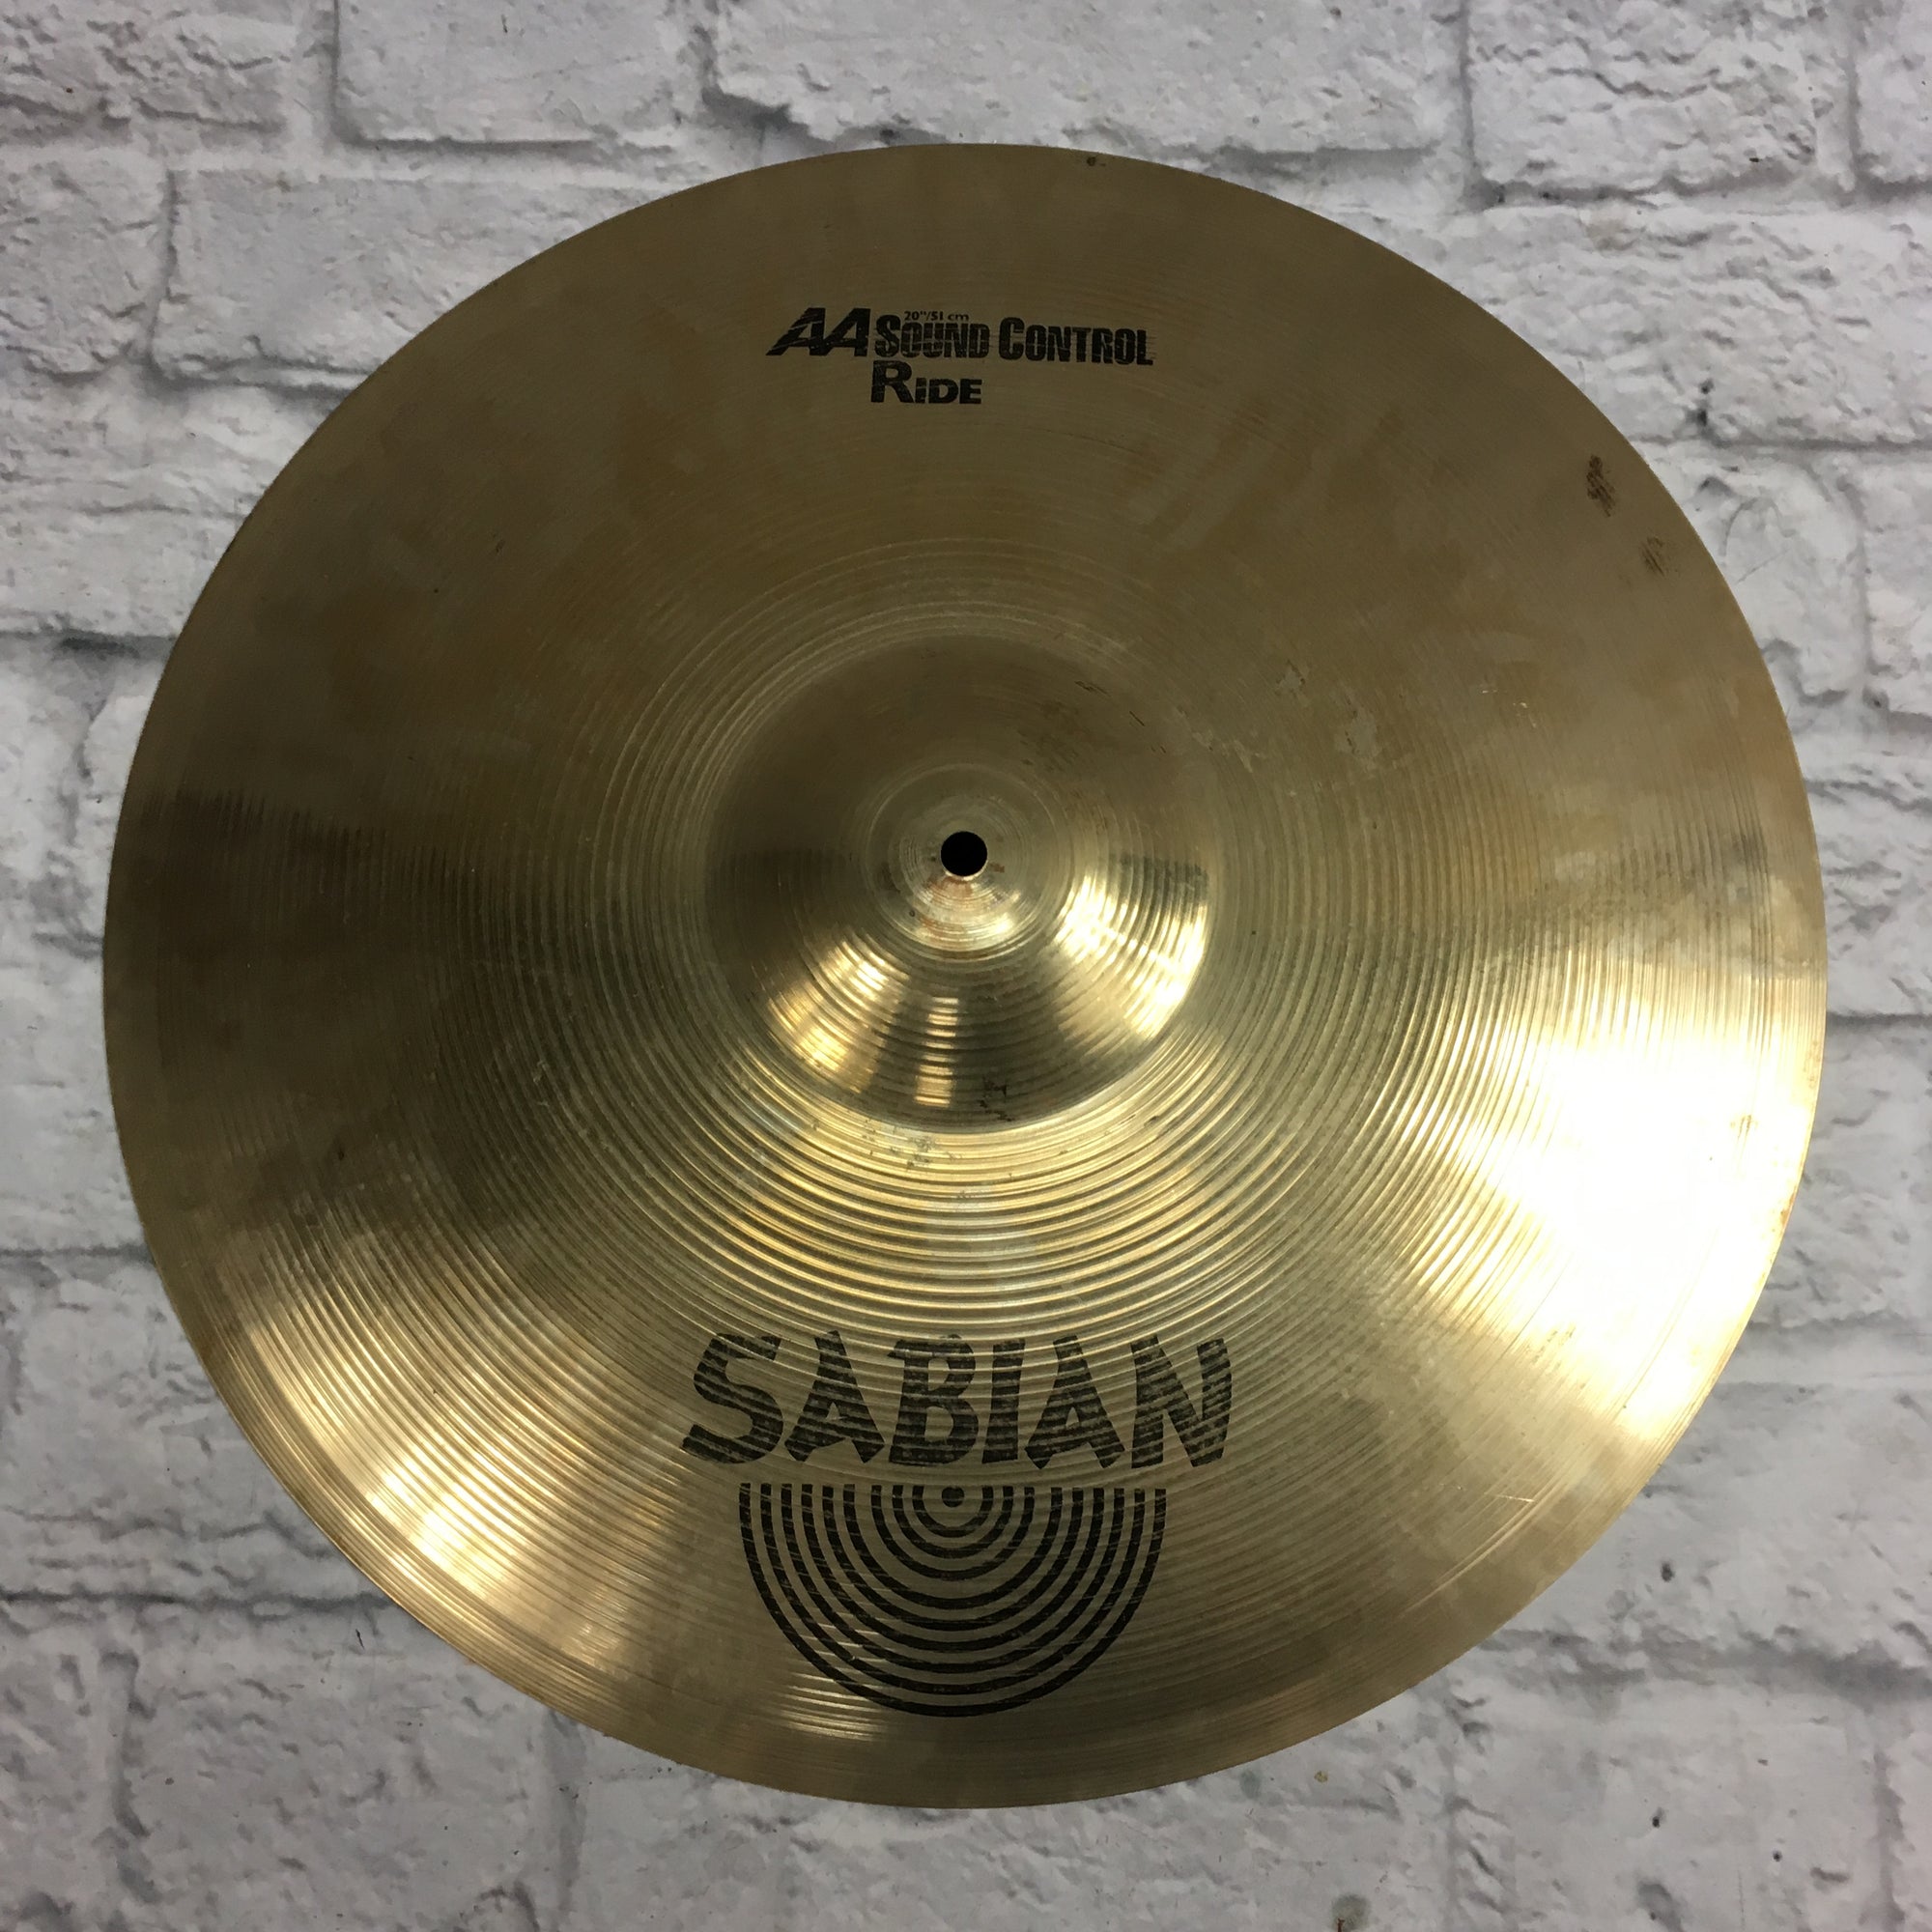 Sabian 20 AA Sound Control Ride Cymbal